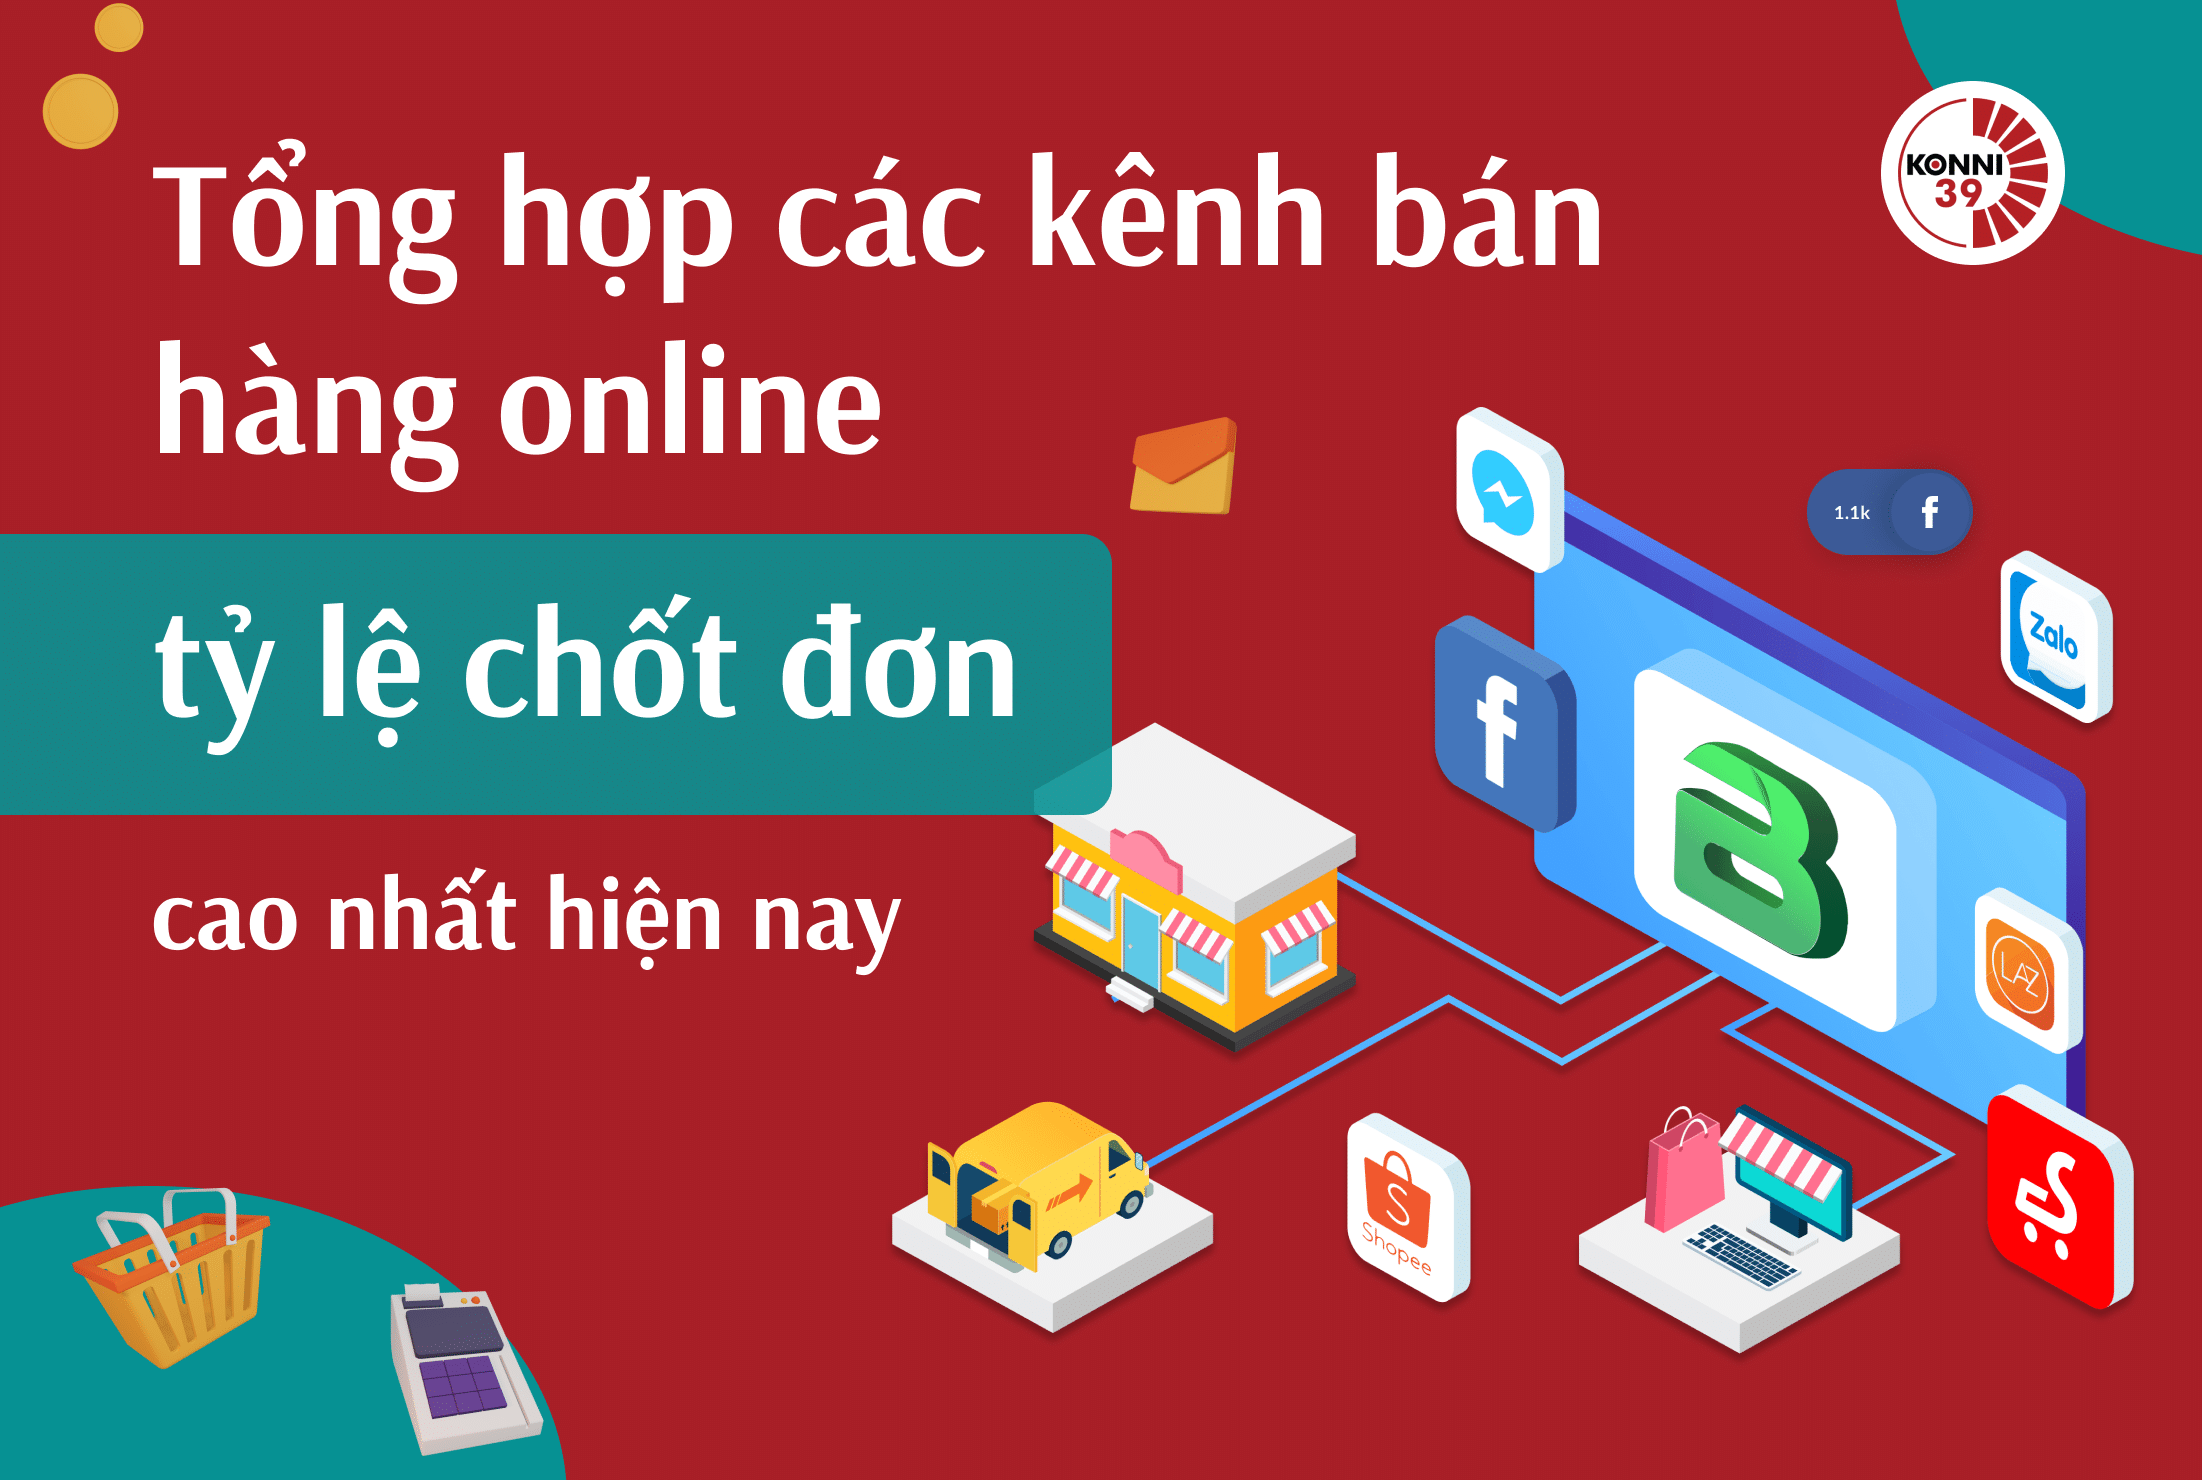 https://konni39.vn/6-kenh-ban-hang-online-hien-nay-cho-moi-cua-hang/